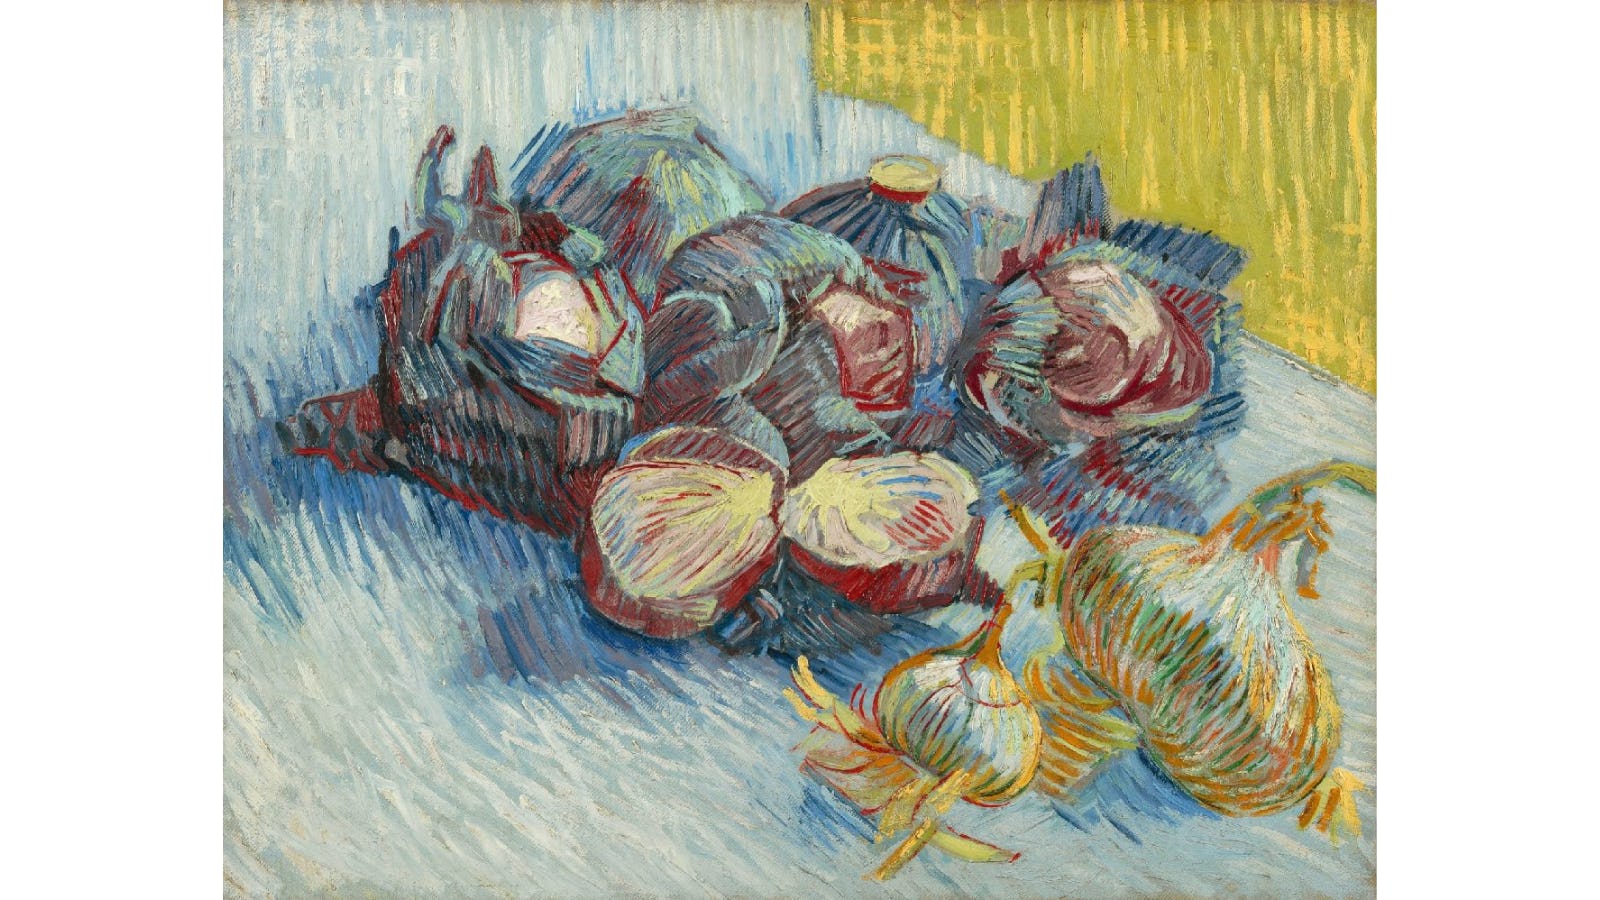 Naam beroemd schilderij Van Gogh aangepast na correctie door chefkok